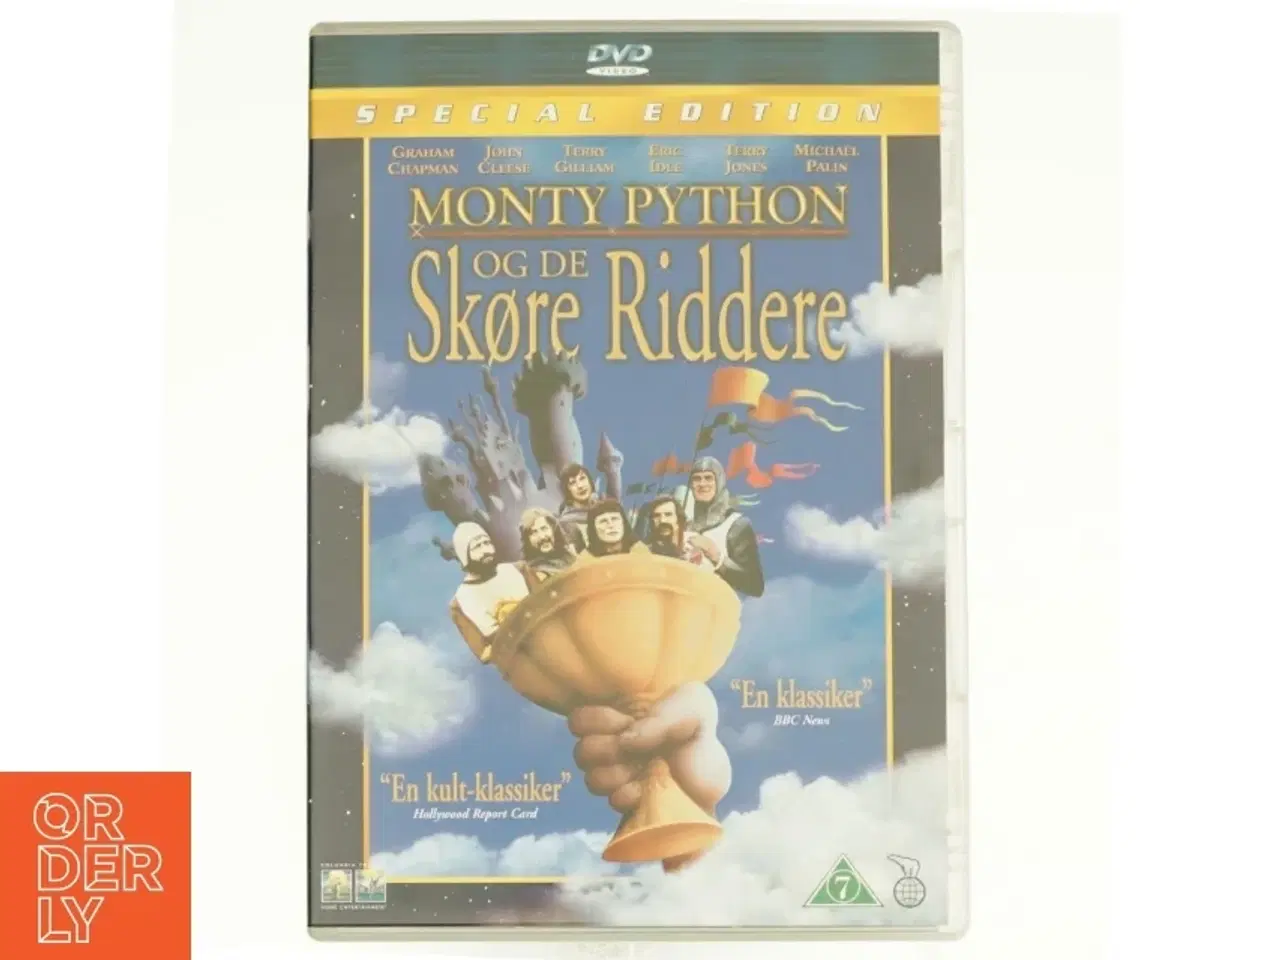 Billede 1 - Monty Python og de skøre riddere (dvd)